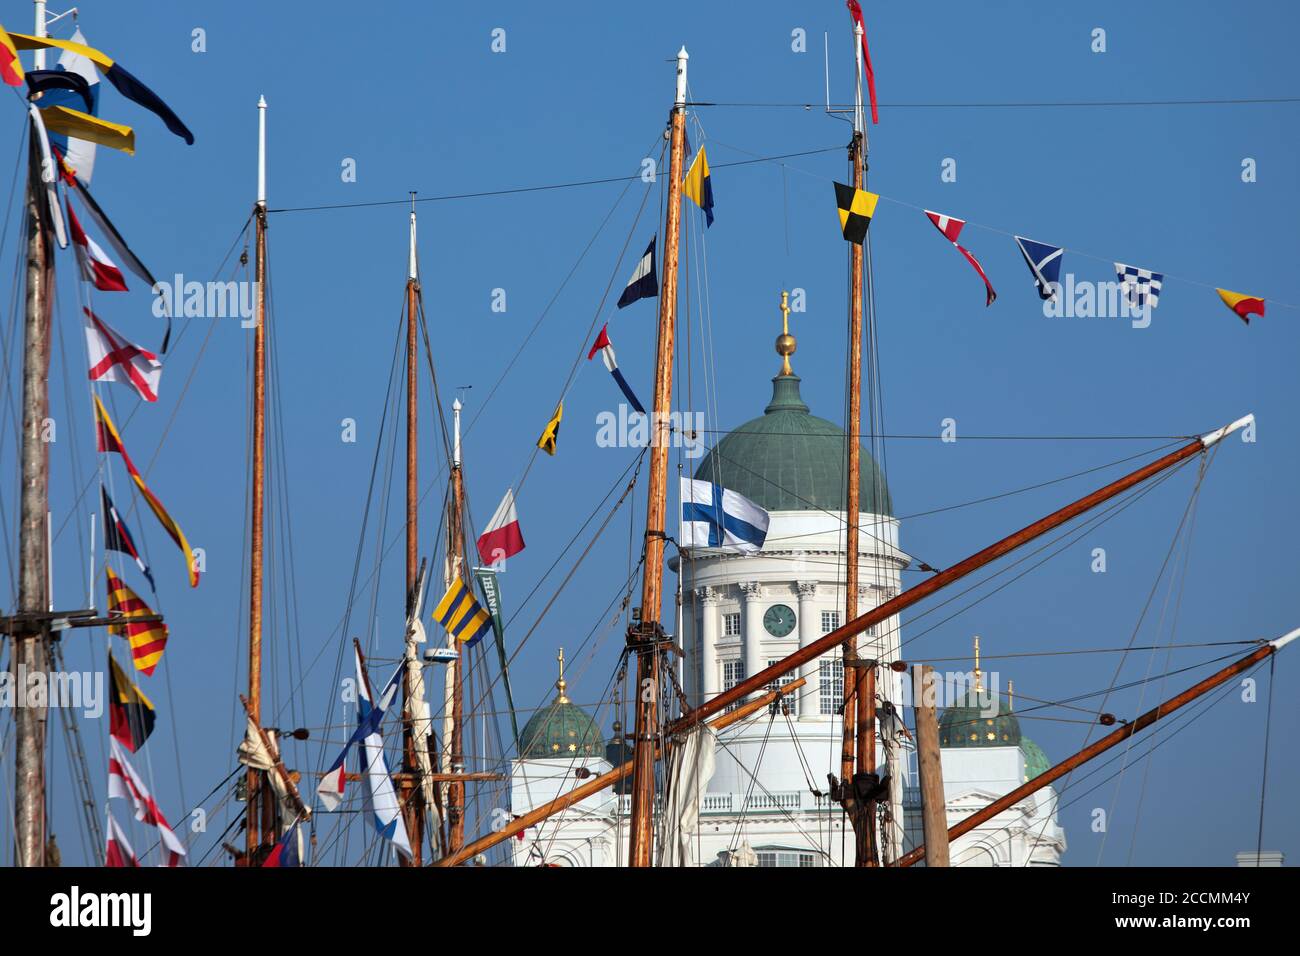 Seezeichen-Flaggen auf Masten von Segelbooten gegen die Kuppel der Kathedrale von Helsinki während des traditionellen Segeltages in Helsinki, Finnland Stockfoto